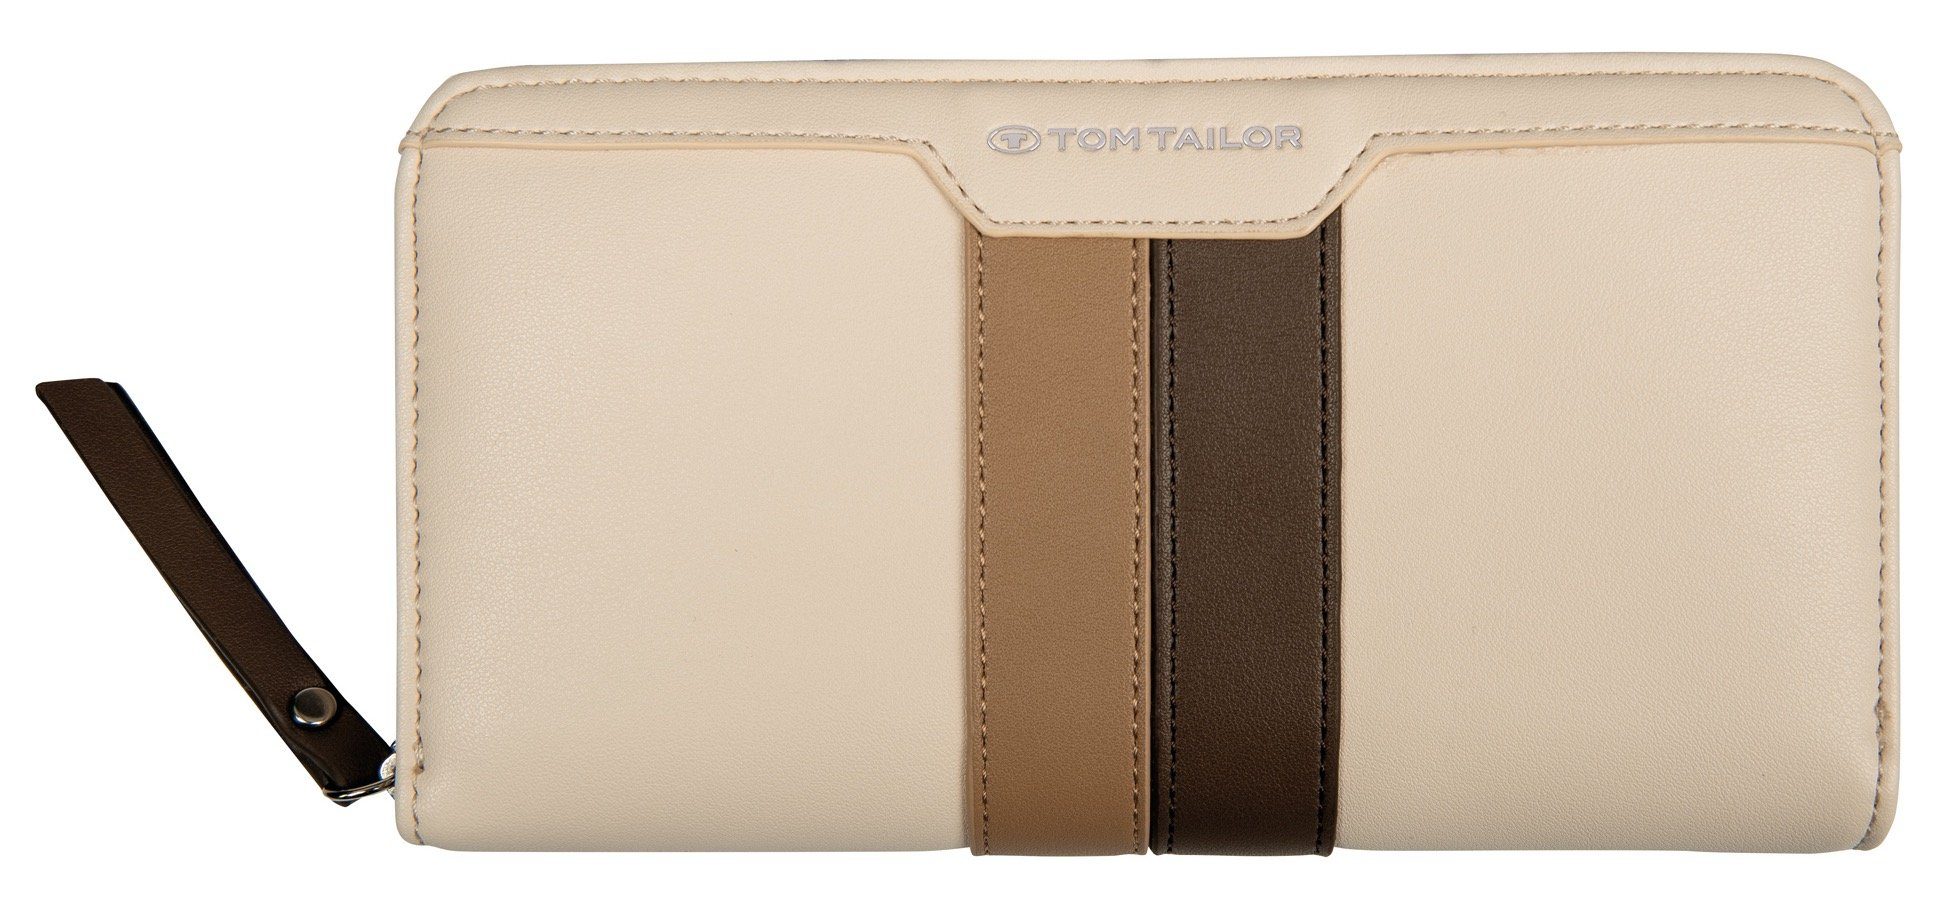 TOM TAILOR Geldbörse VIOLET WALLET Long zip wallet, mit charakteristischem Streifenmuster beige